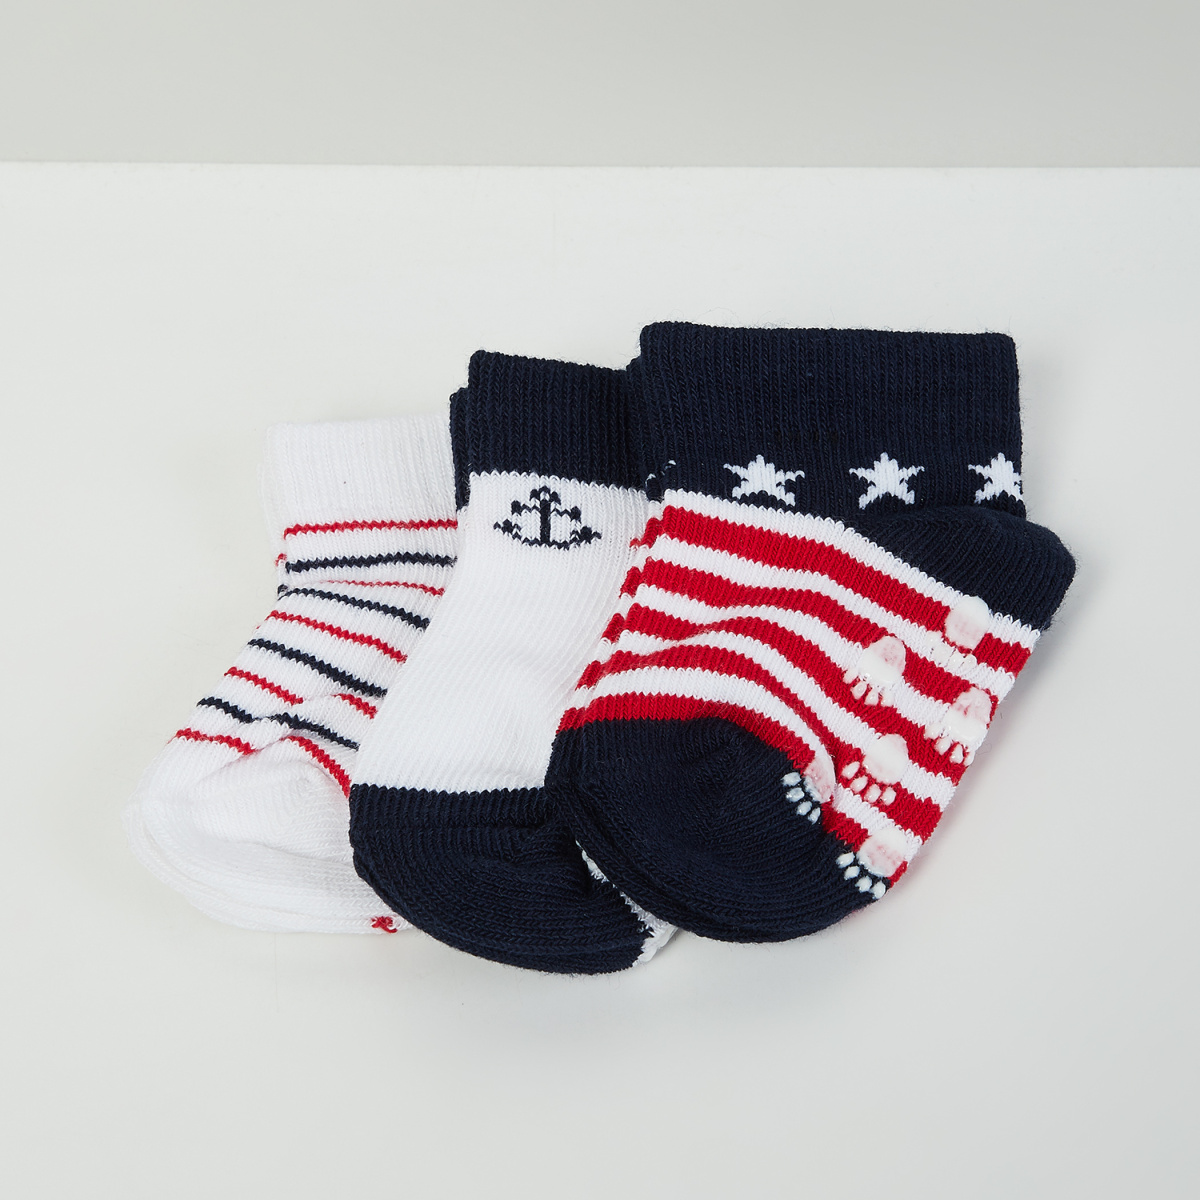 MAX Printed Socks- Set of 3